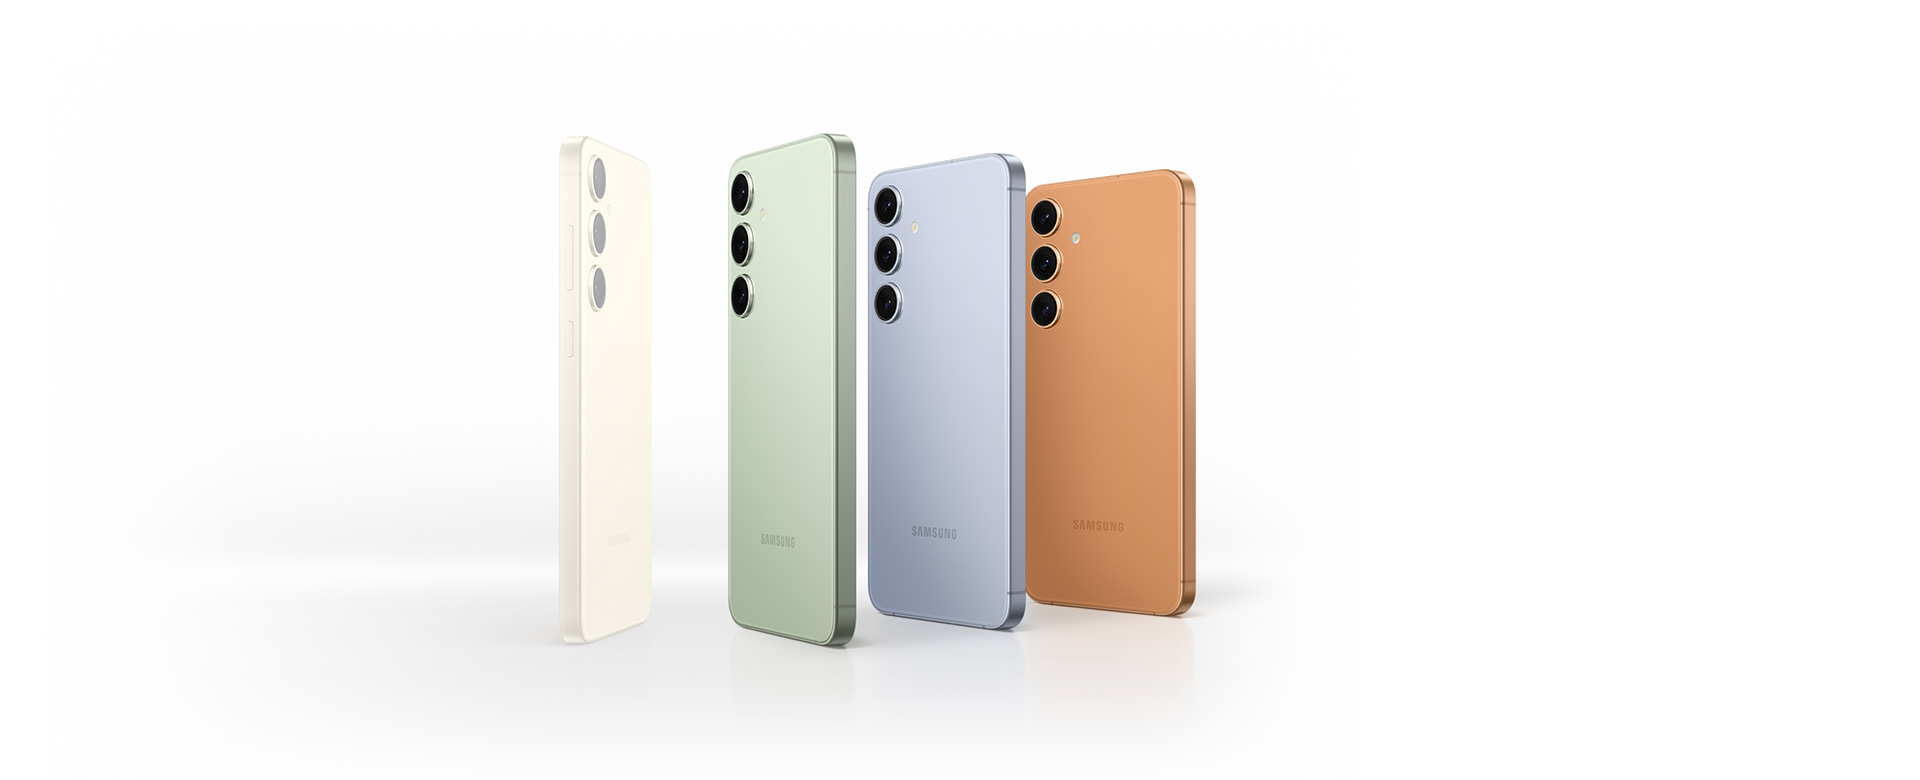 عرض جهاز Galaxy S24 Series بلون أصفر عنبري، ثم تظهر أجهزة بالألوان المتوفرة حصرياً عبر الإنترنت: الأخضر الزمردي، الأزرق الياقوتي، والبرتقالي الرملي.